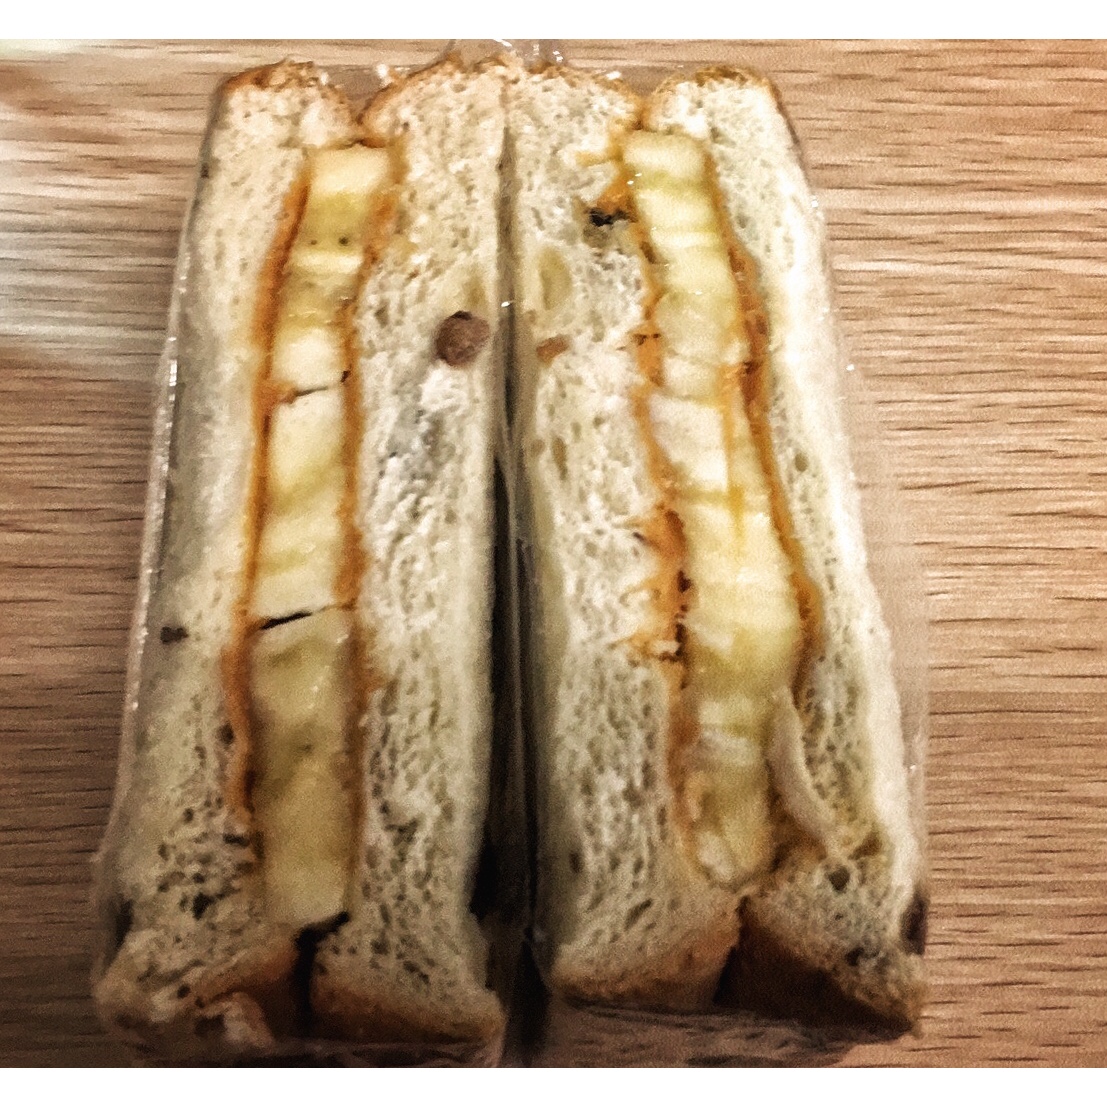 花生酱香蕉三明治